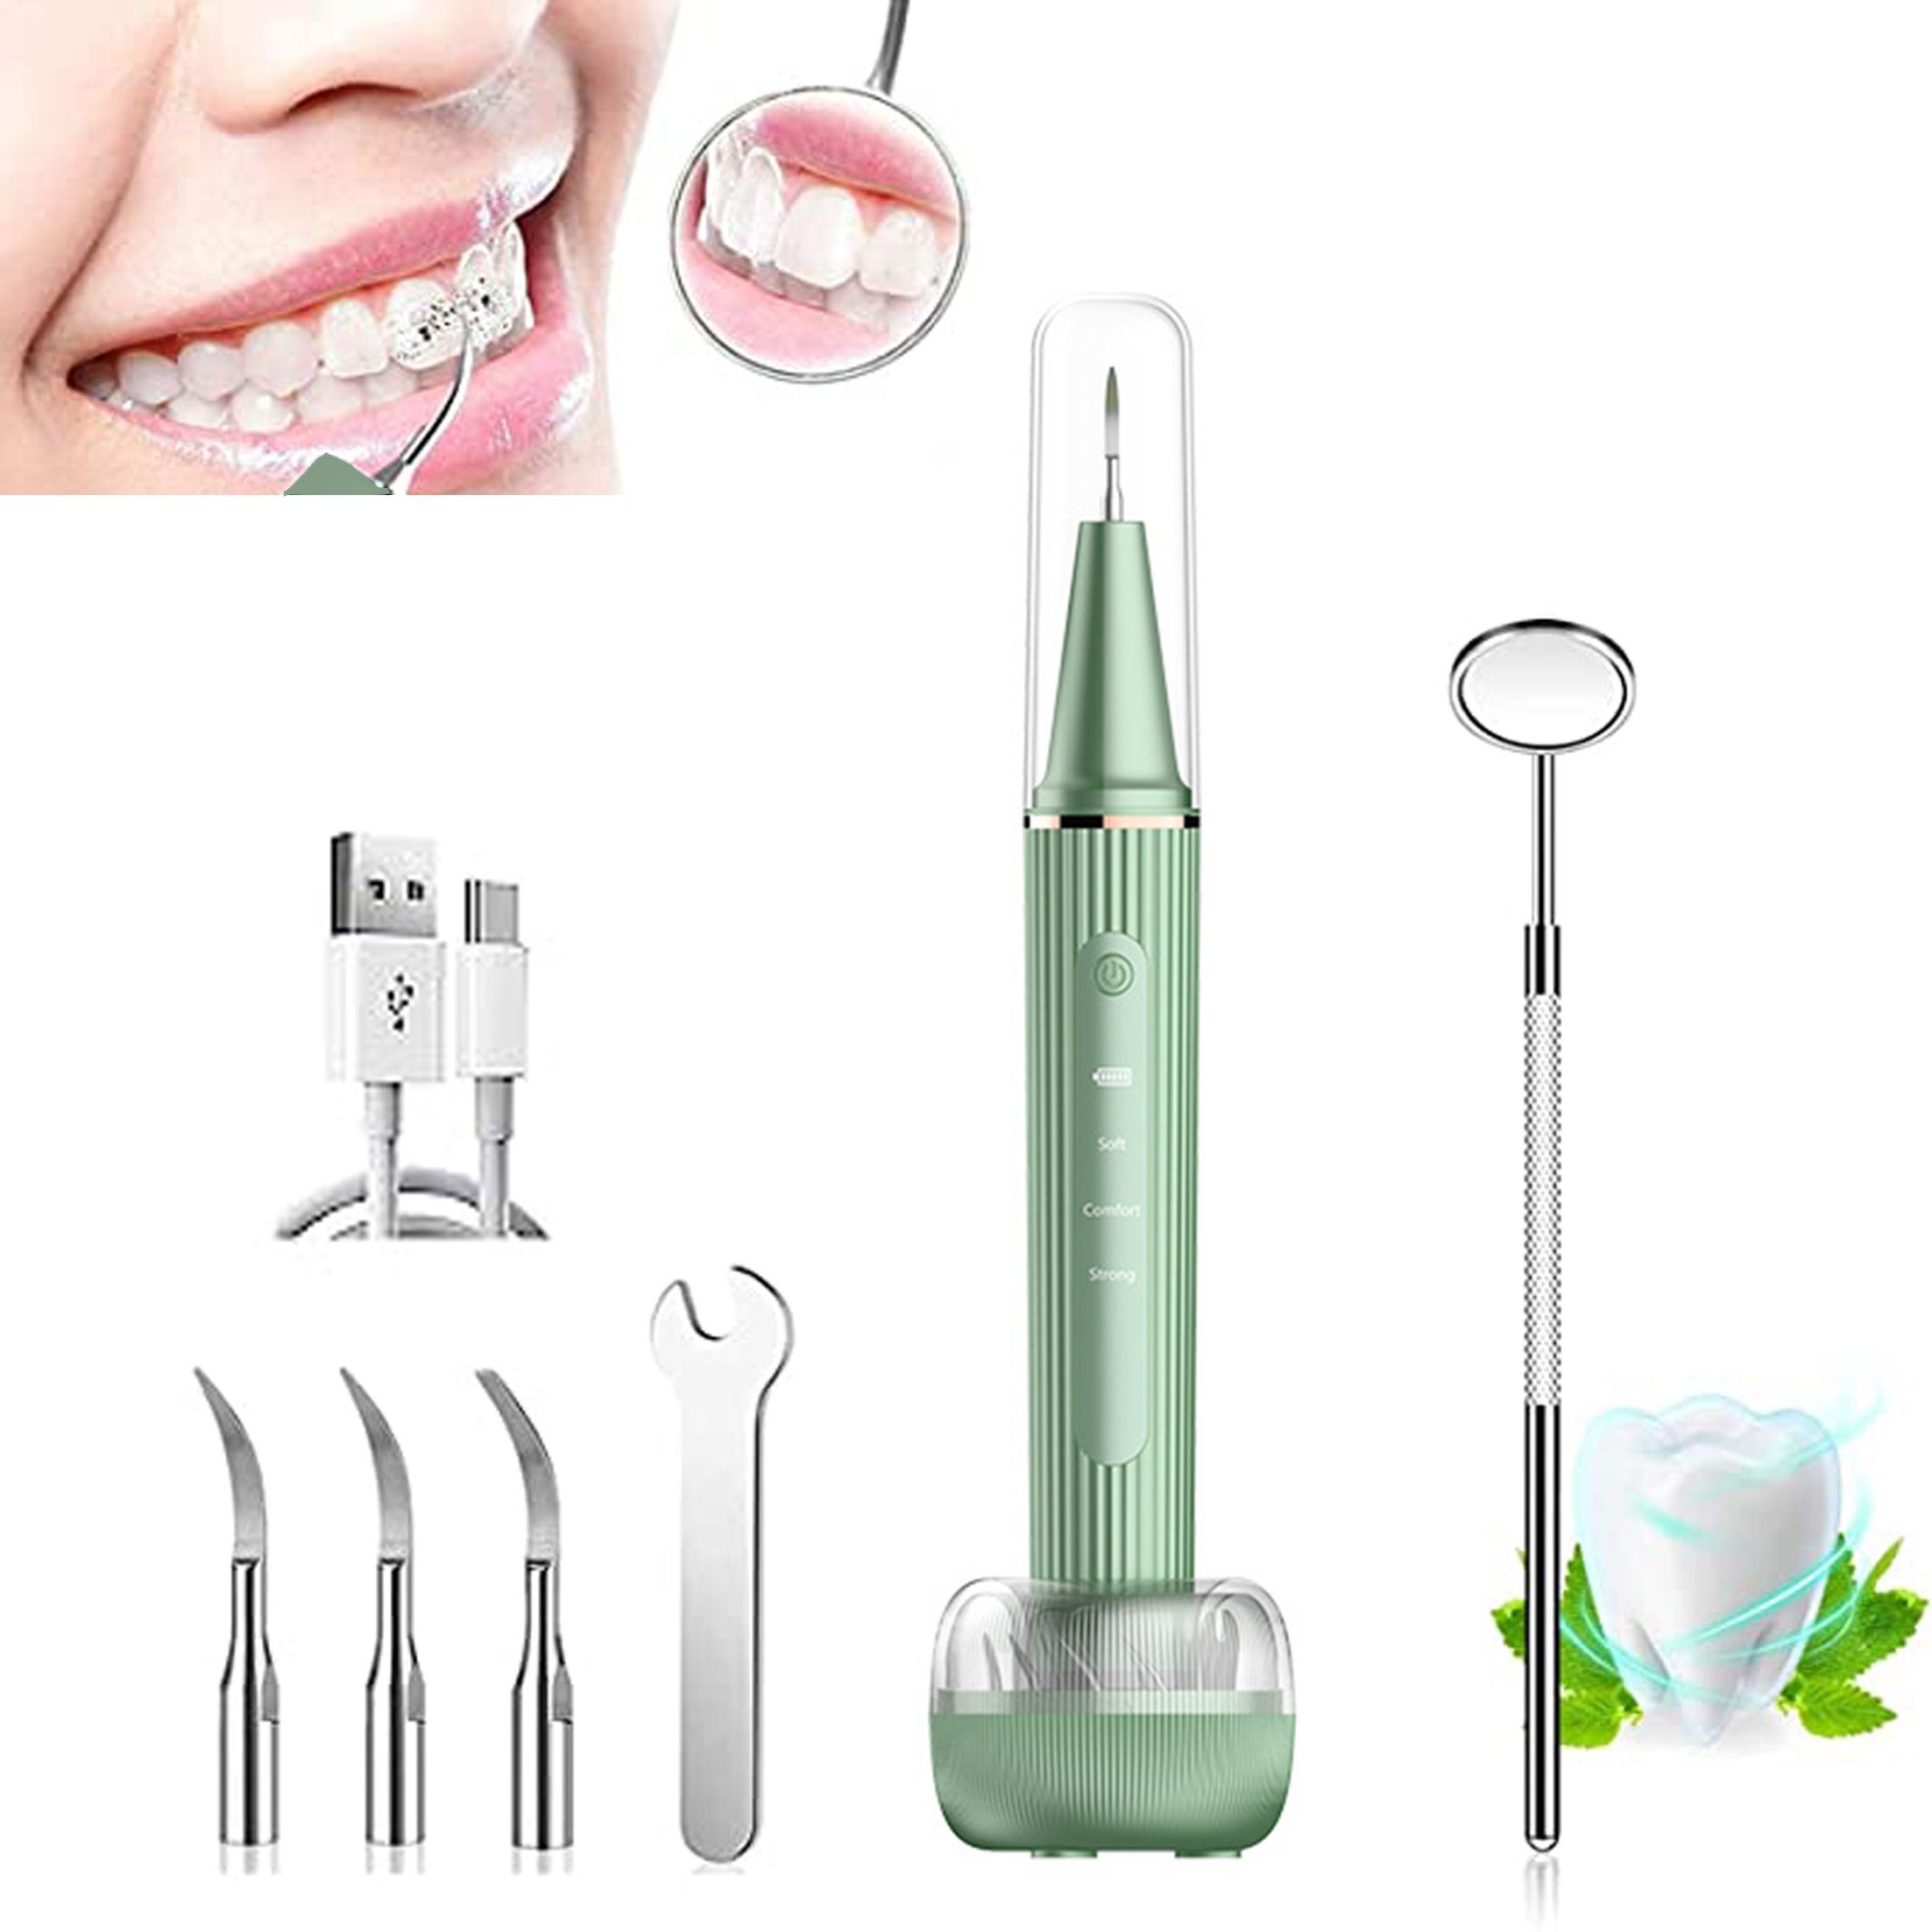 Dedom Munddusche Zahnreiniger,Visueller Ultraschall-Zahnreiniger,3 Ersatzköpfe, HD-Endoskopie,Entfernt Zahnstein und Zahnbelag